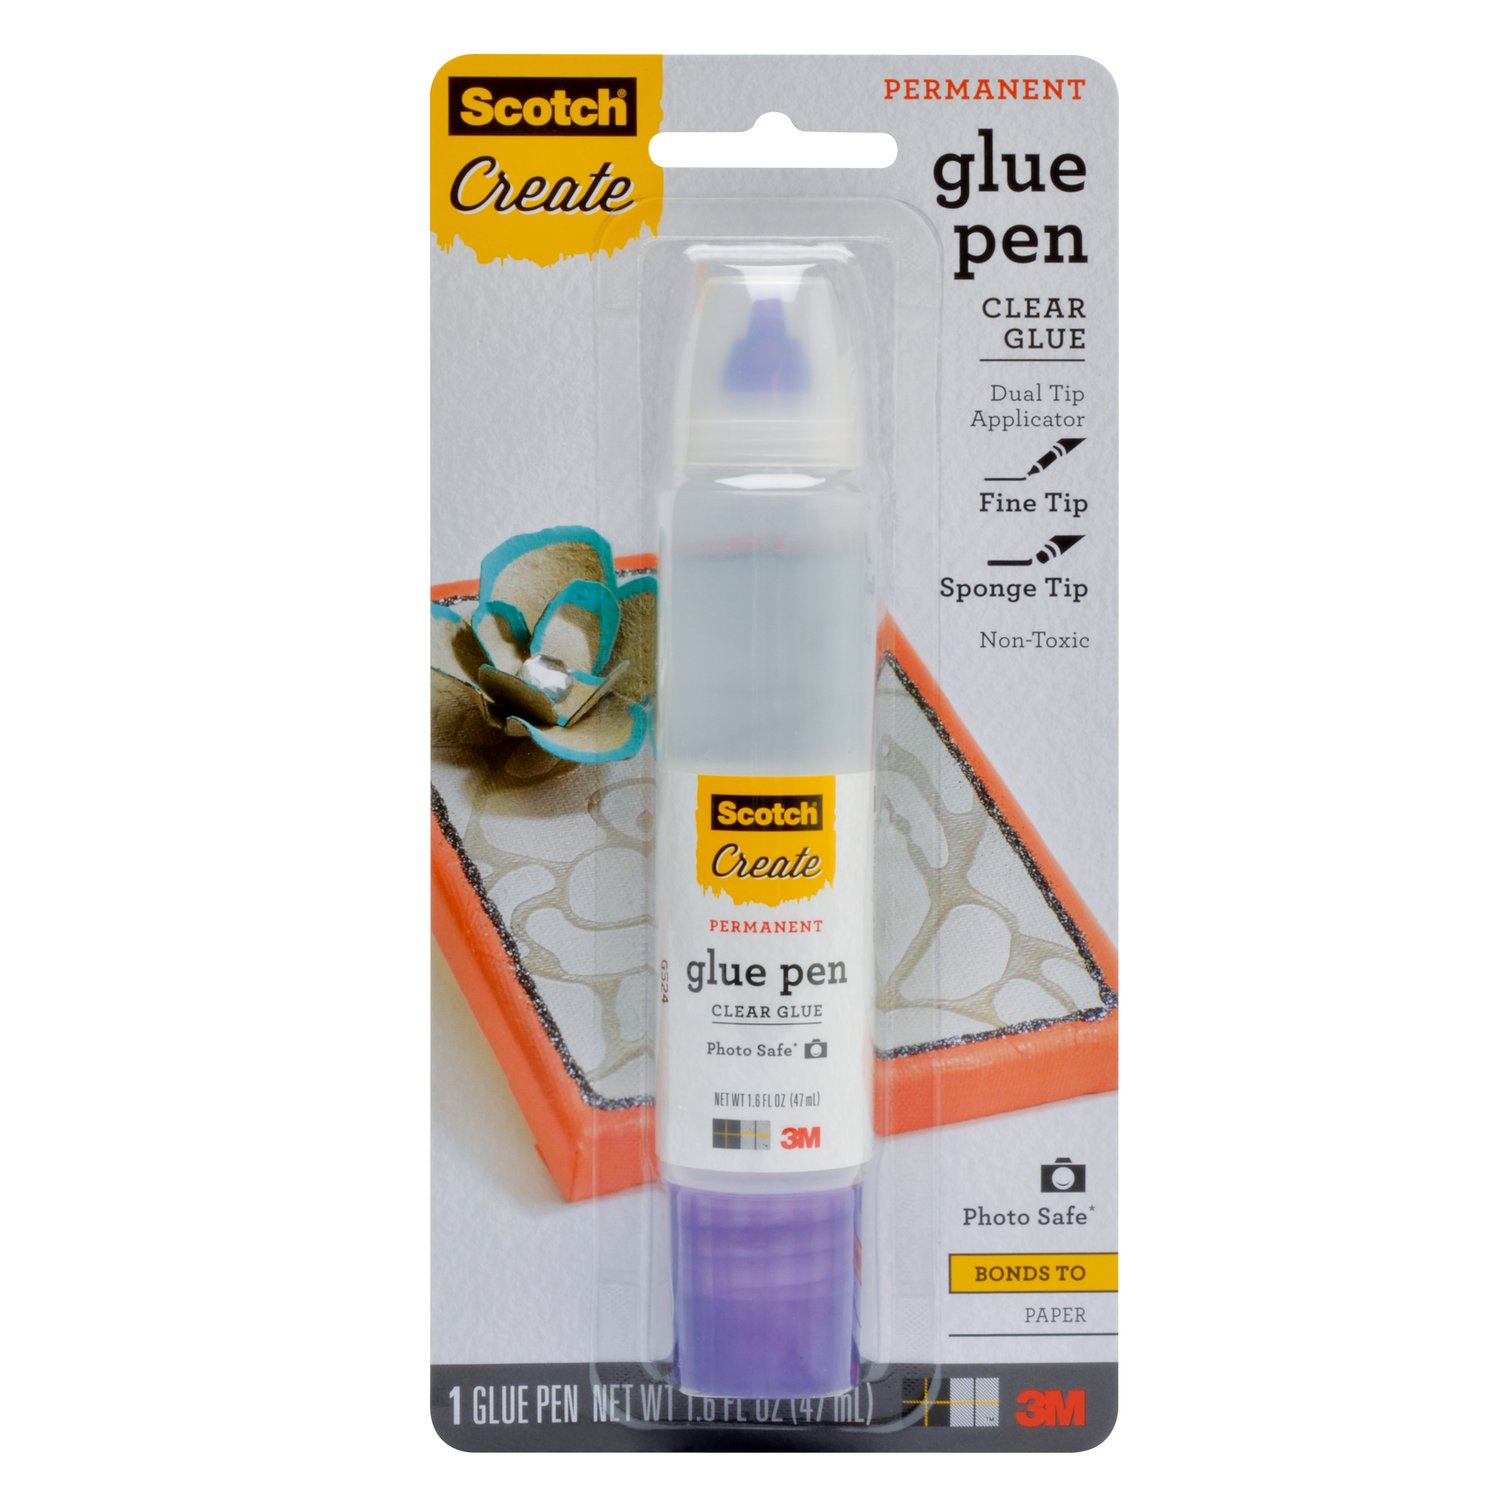 7100222313 - Scotch Glue Pen 019-CFT, 1.6 fl. oz. (47 ml)